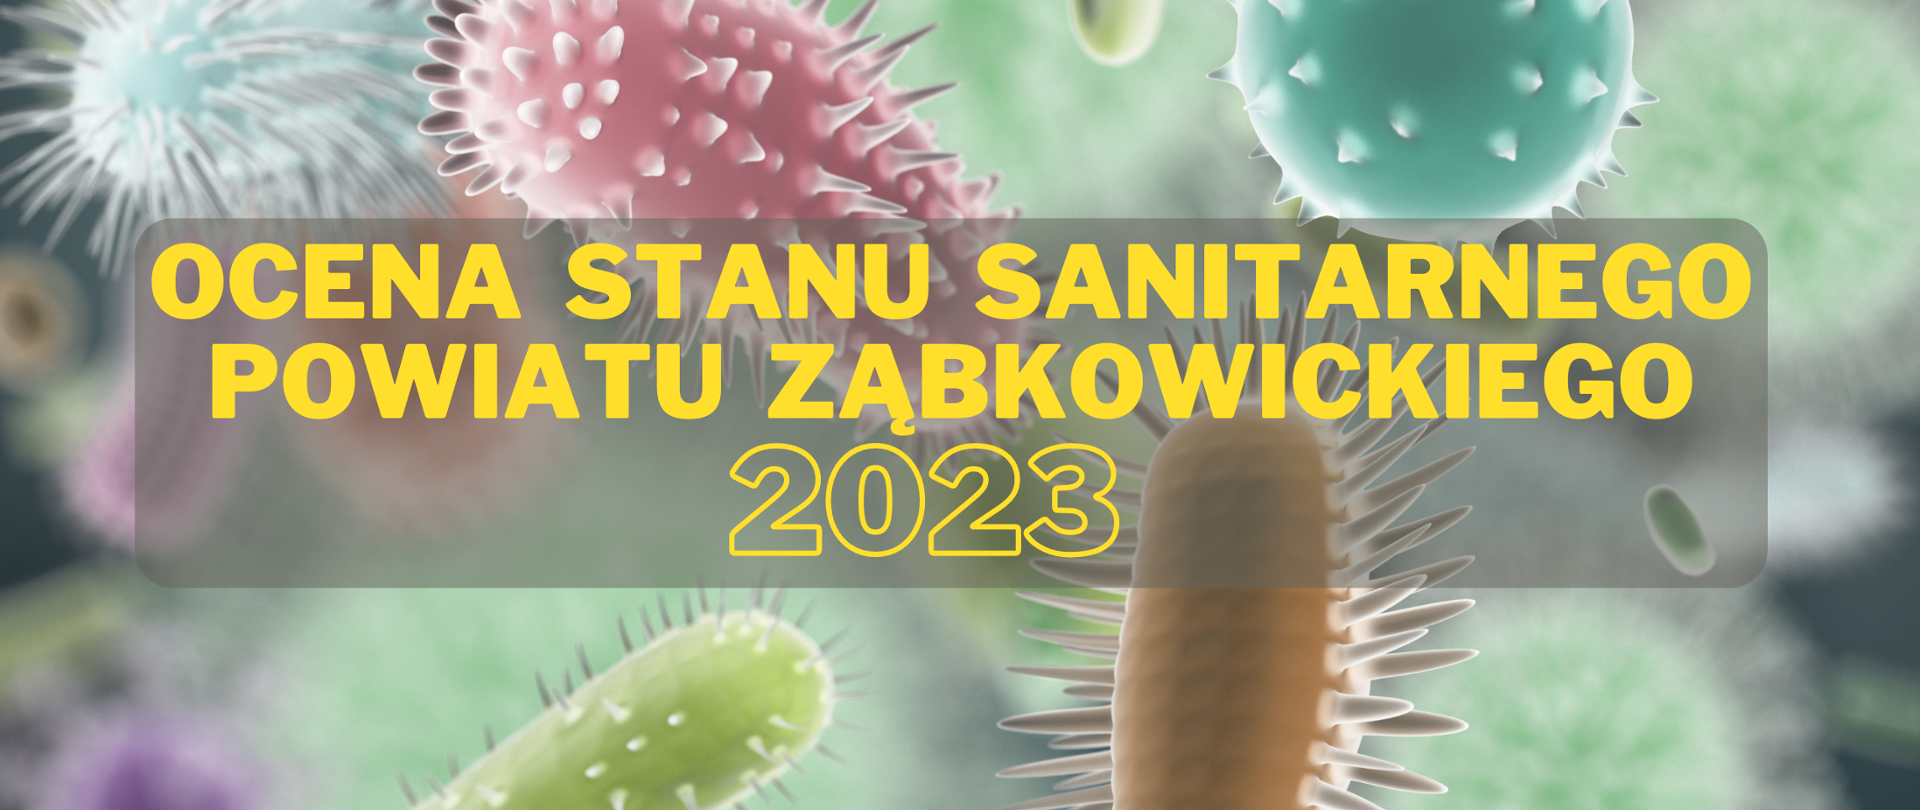 Ocena stanu sanitarnego powiatu ząbkowickiego za 2023 rok